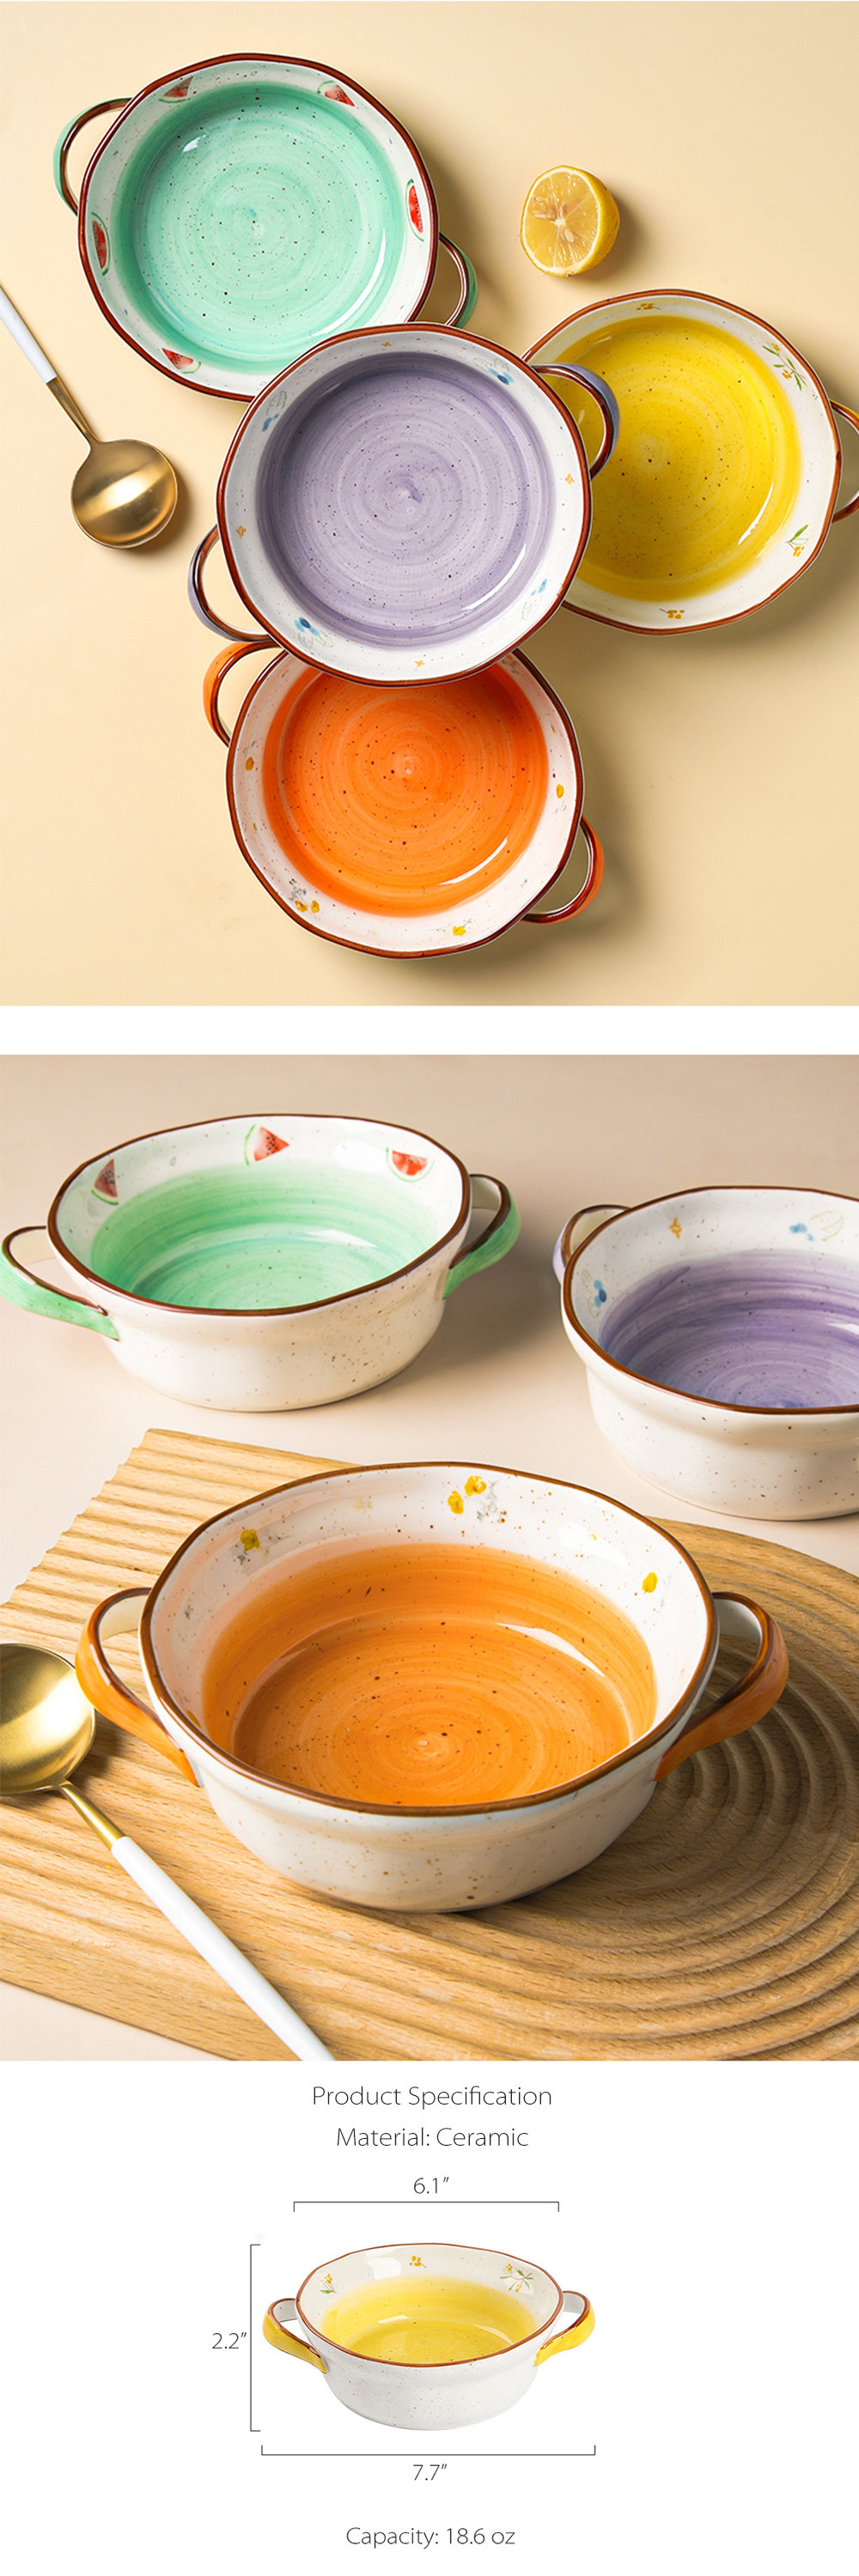 Double ear ceramic large soup bowl soup pot with lid ceramic bowl